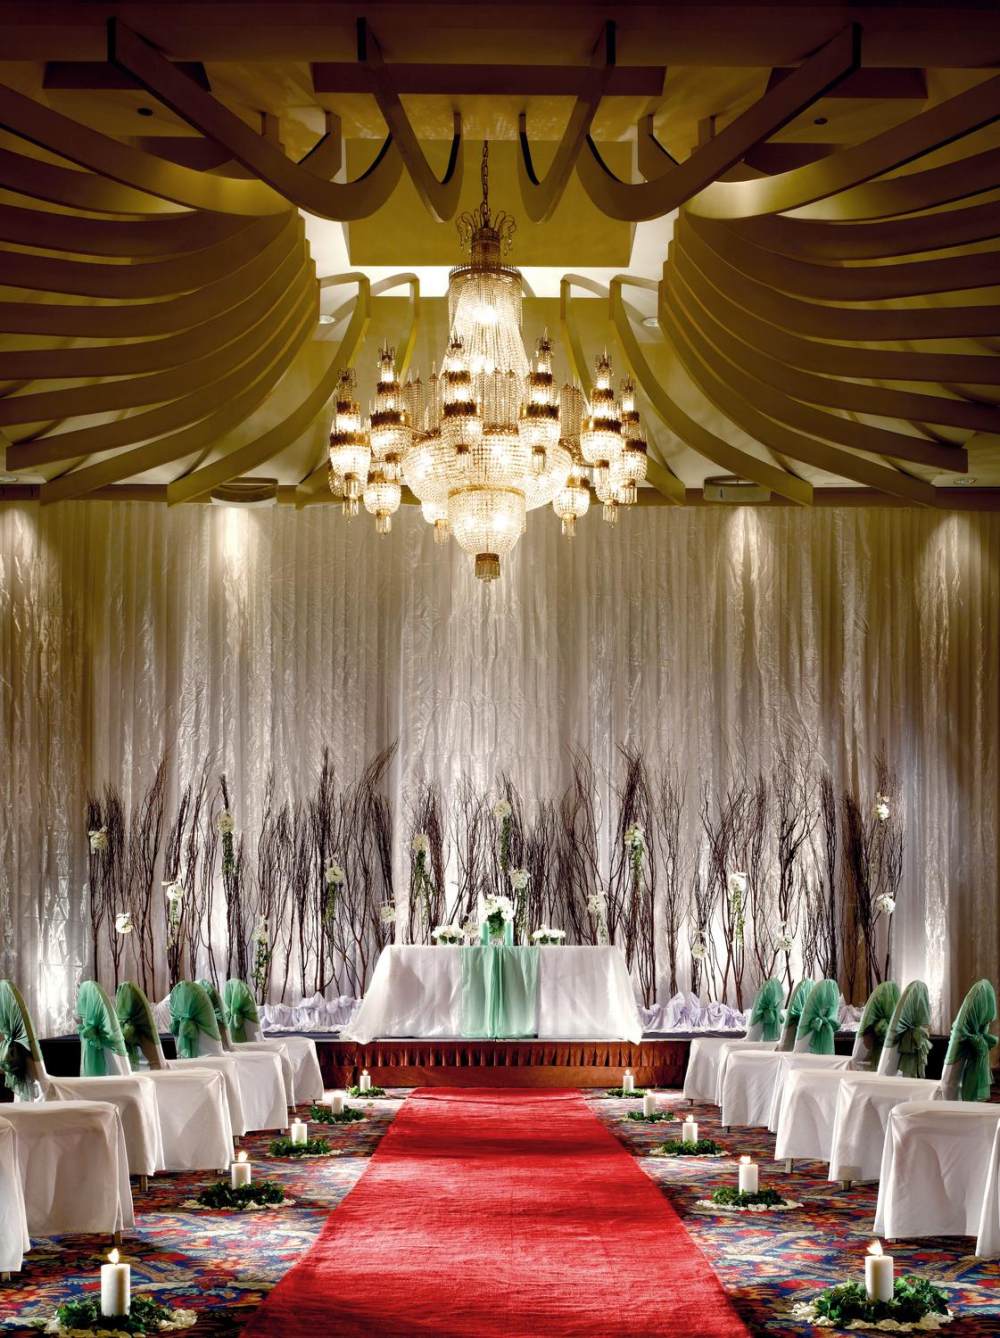 印度尼西亚雅加达艾美酒店_10)Le Meridien Jakarta—Banquet Event - Wedding Altar 拍攝者.jpg